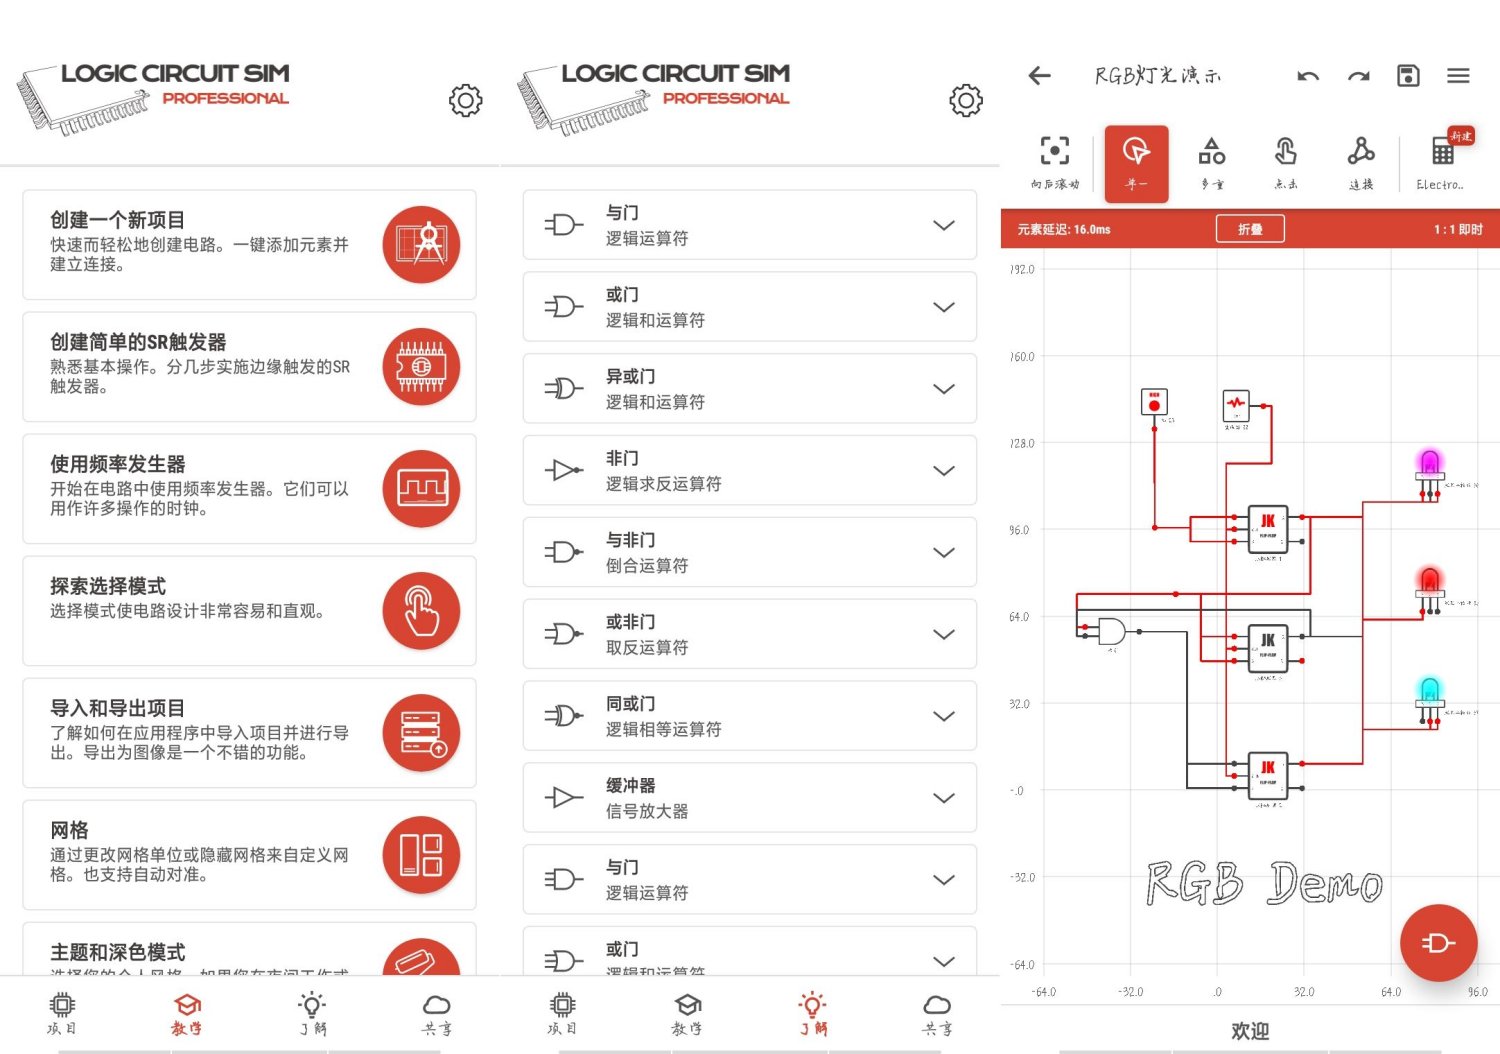 逻辑电路模拟器 36.0.0 电路设计神器 专业版